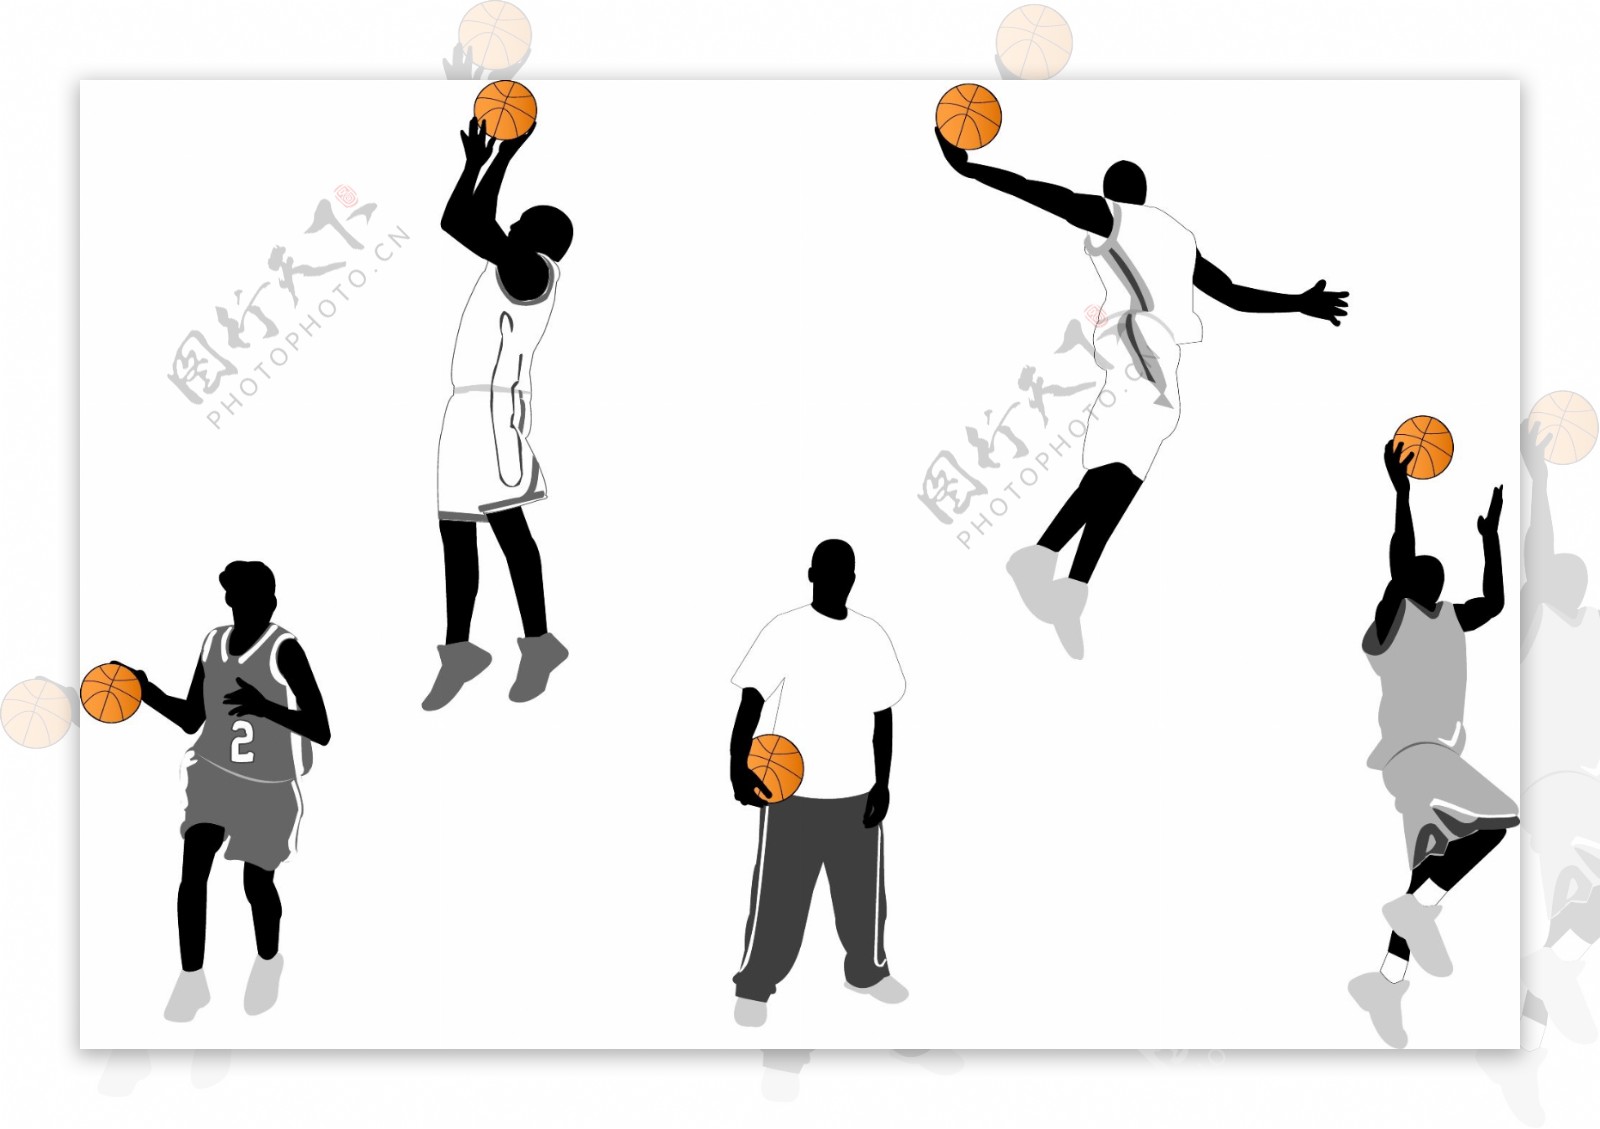 具代表性的篮球动作图片